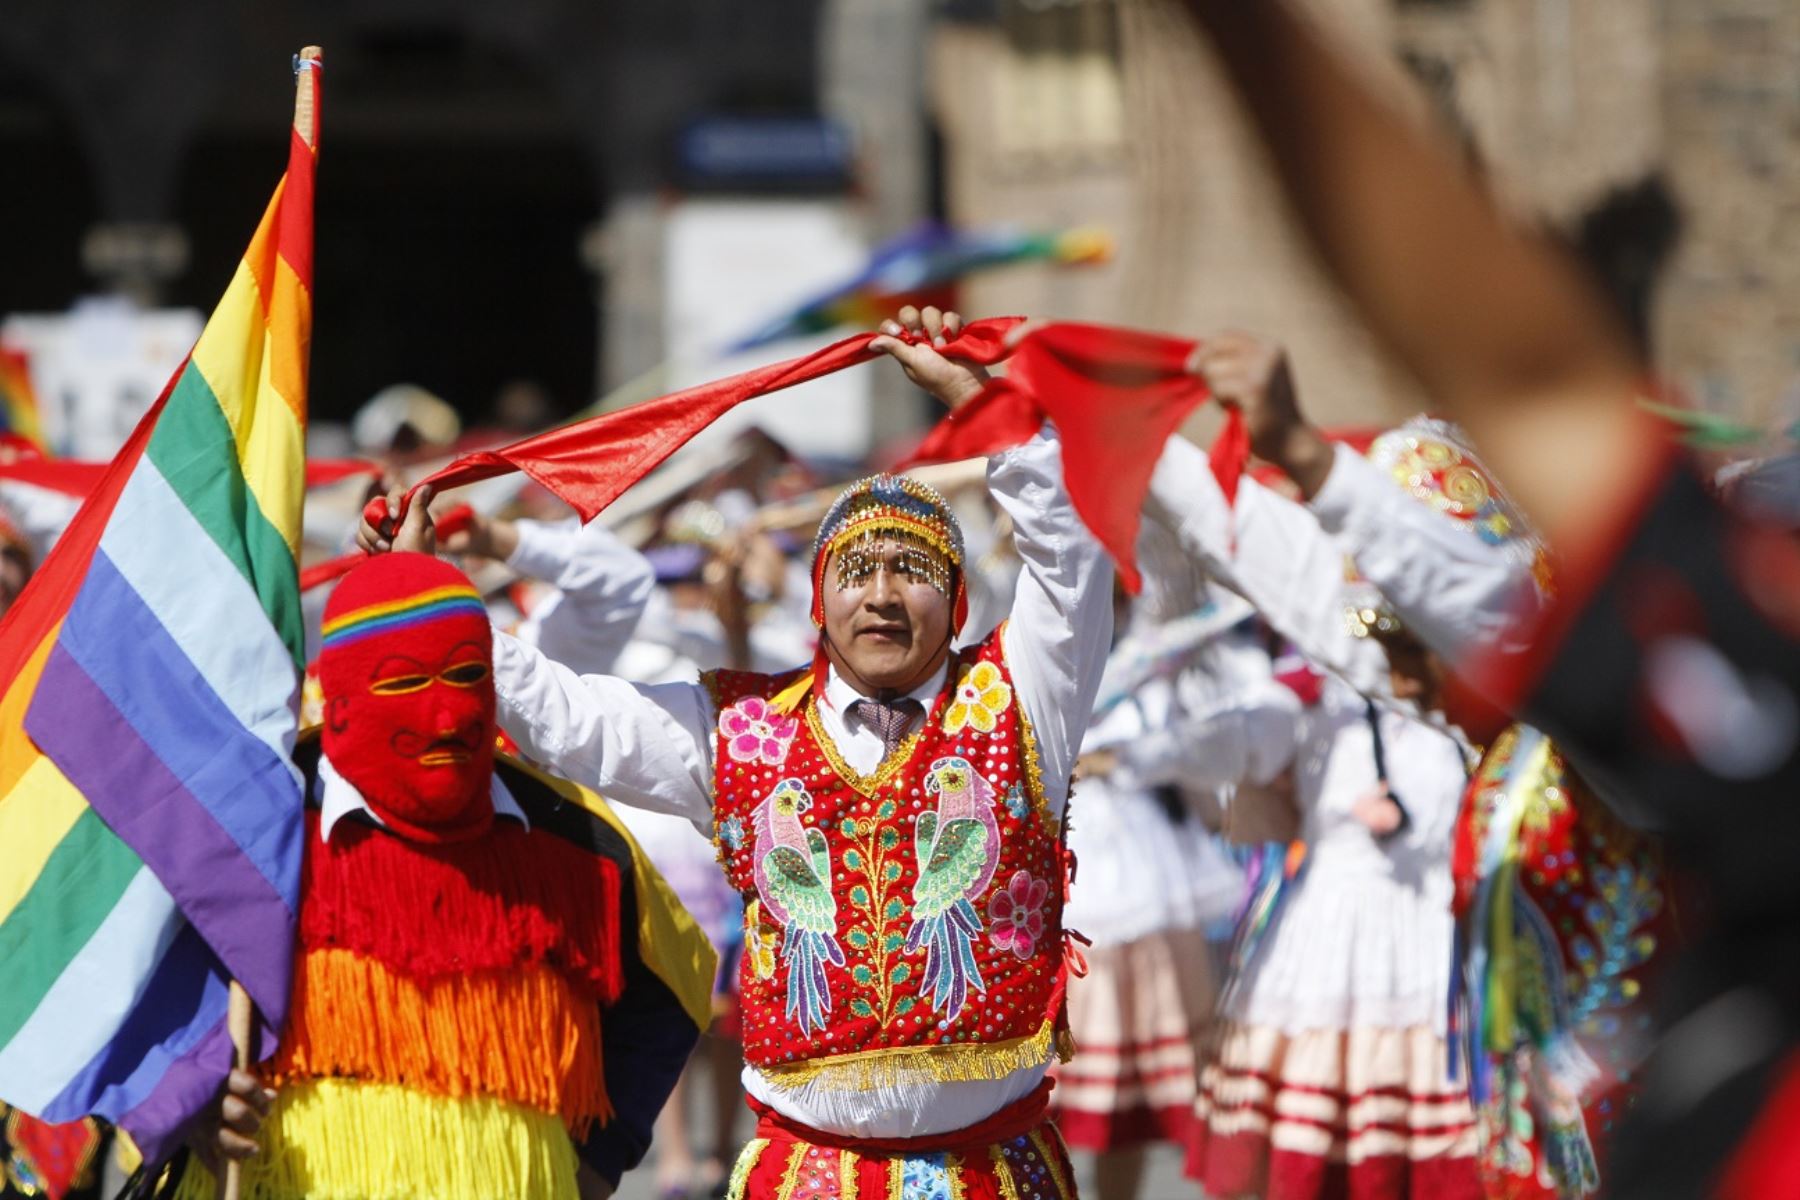 Con colorido y algarabía se desarrolla el desfile cívico en honor a Cusco. ANDINA/Percy Hurtado Santillán